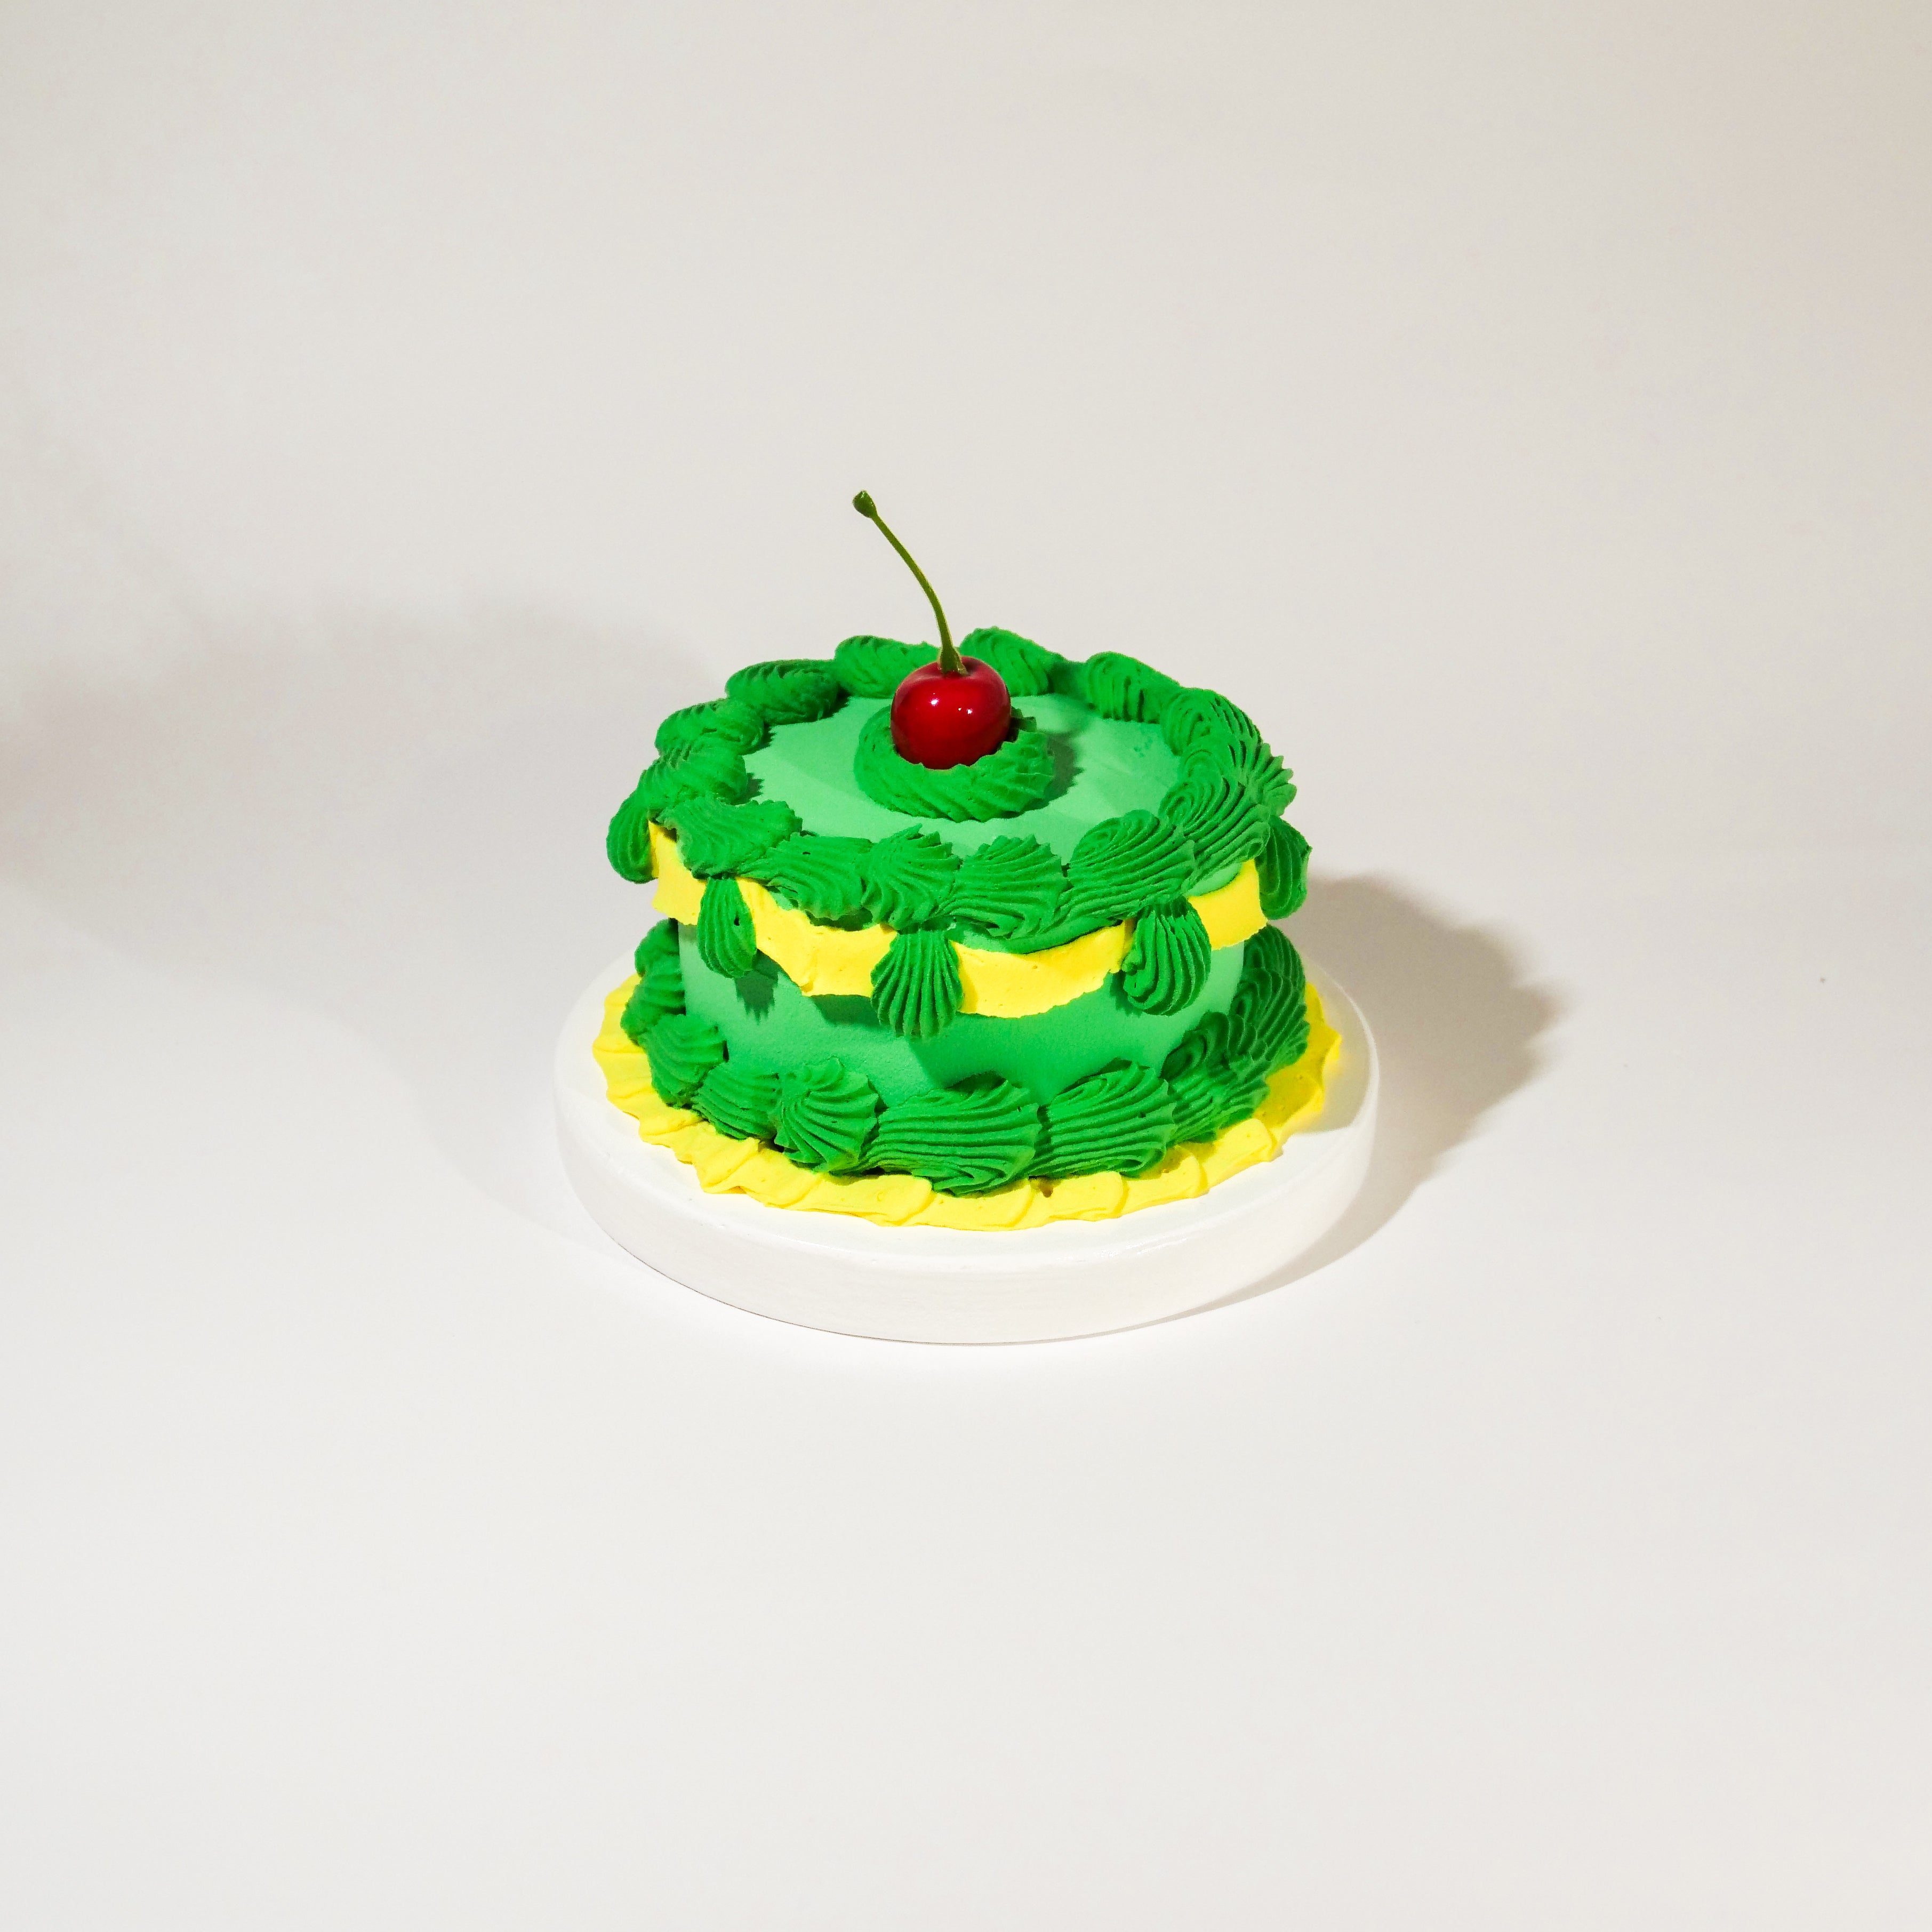 Green Green Cake Sculpture